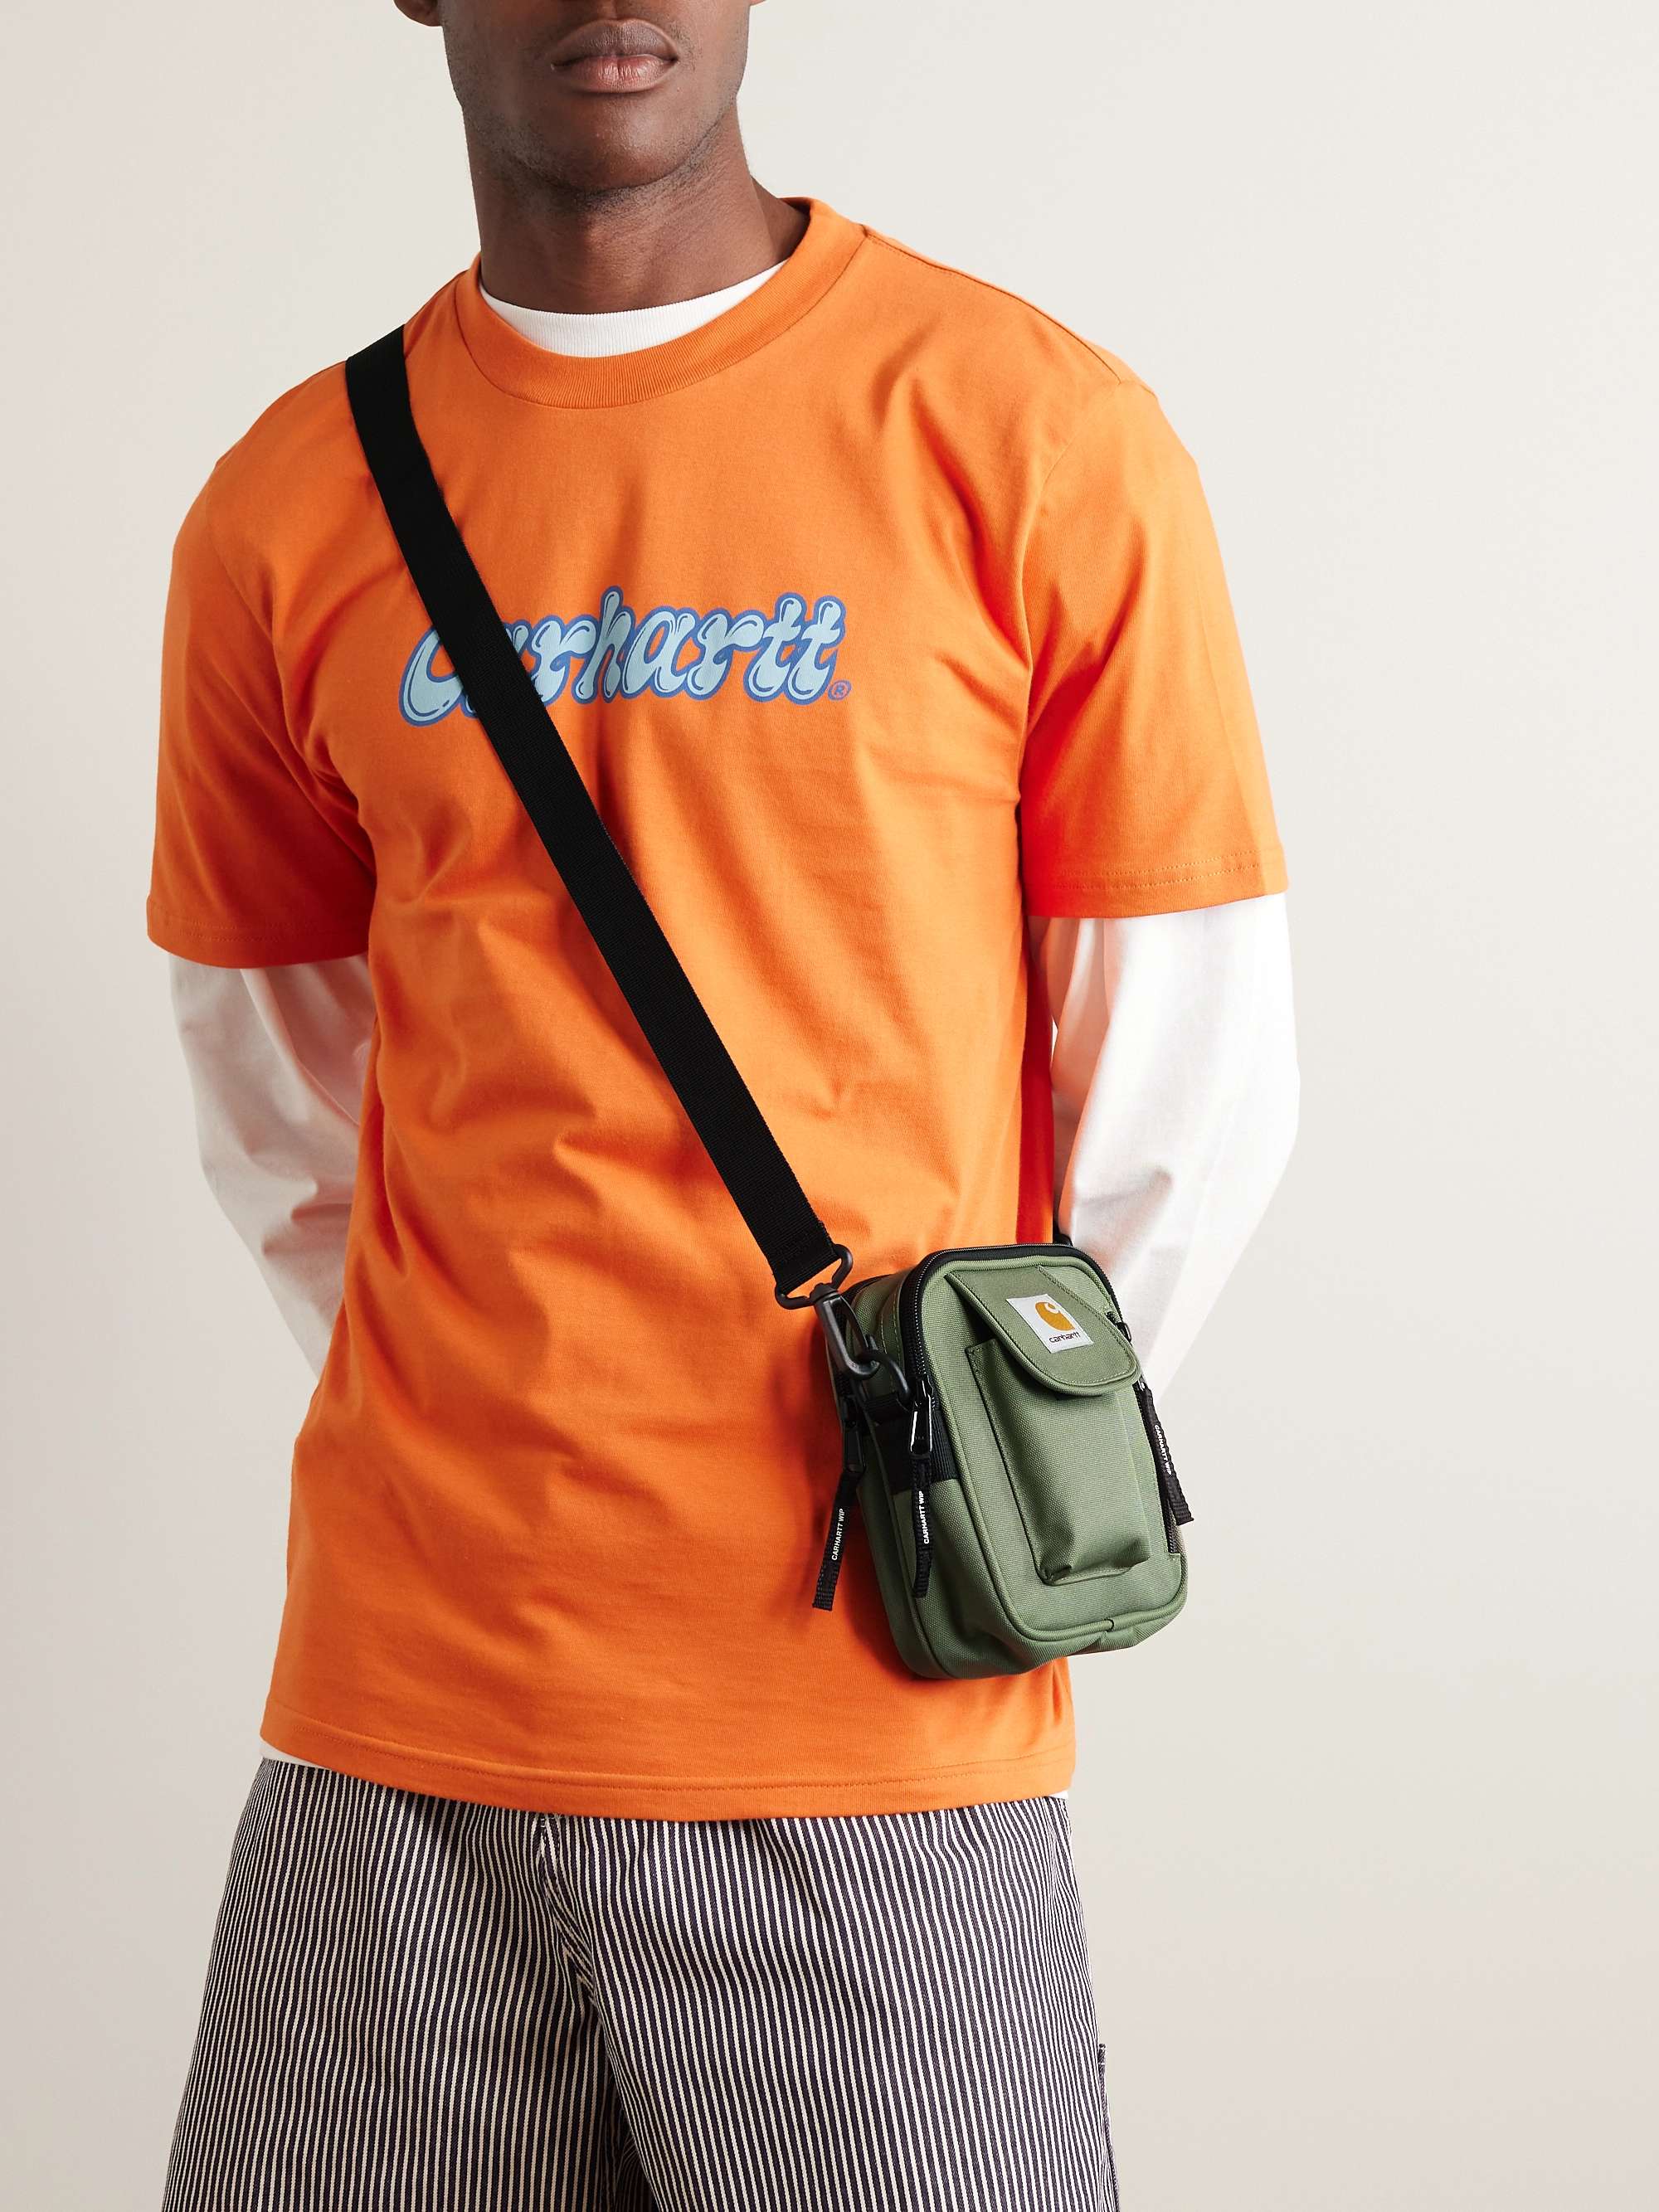 shoulder bag carhartt bag